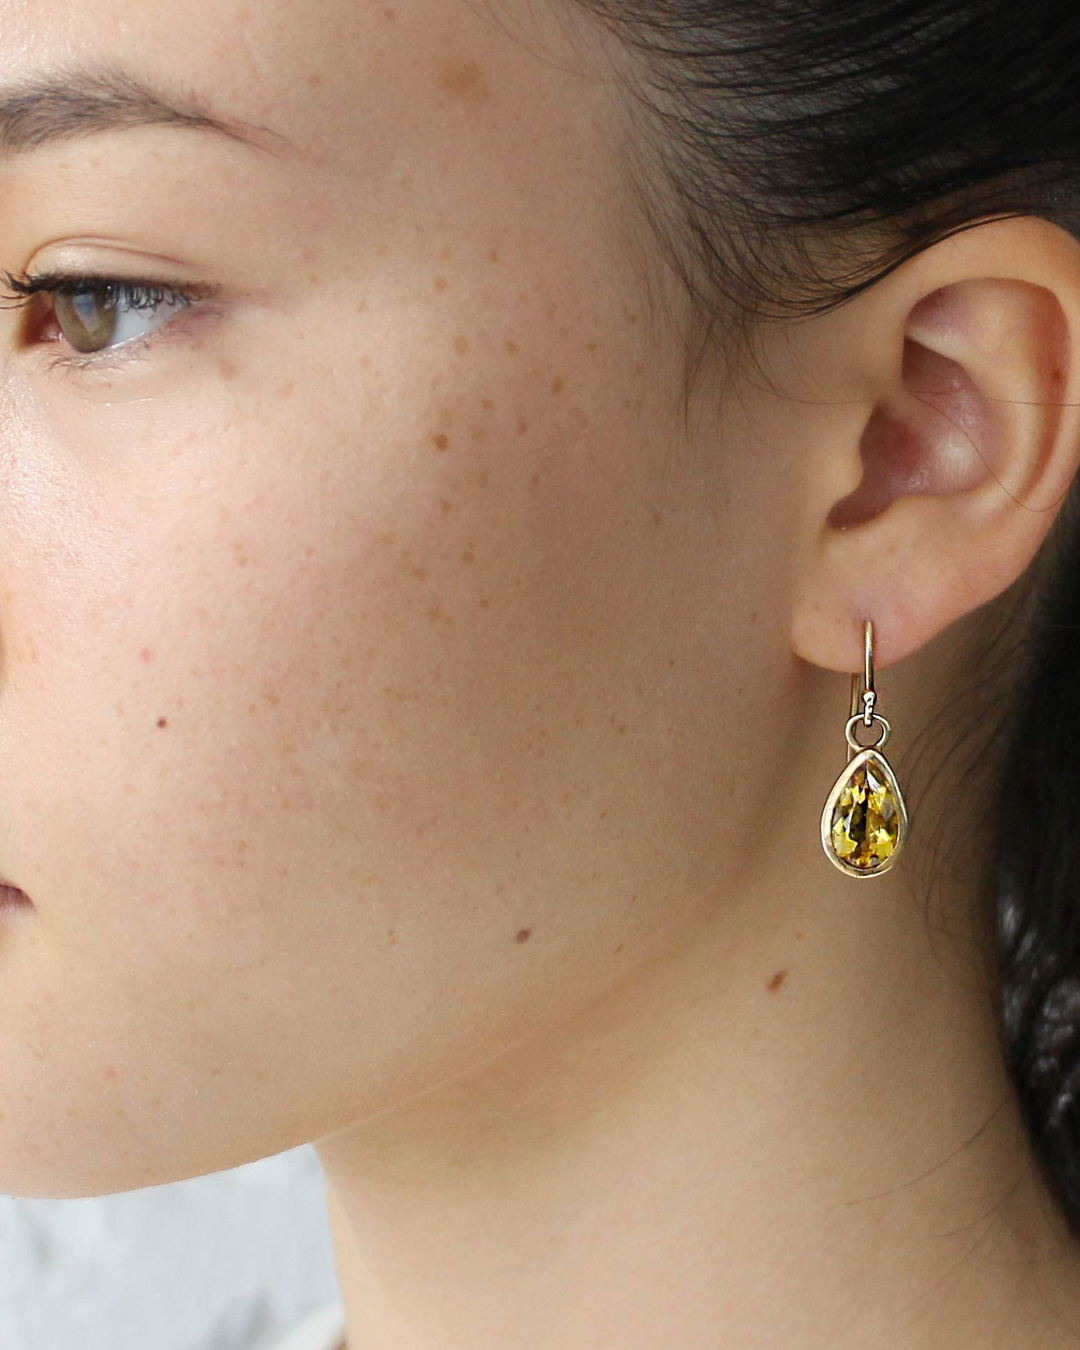 Pear / Citrine Drop Earrings By fitzgerald jewelry